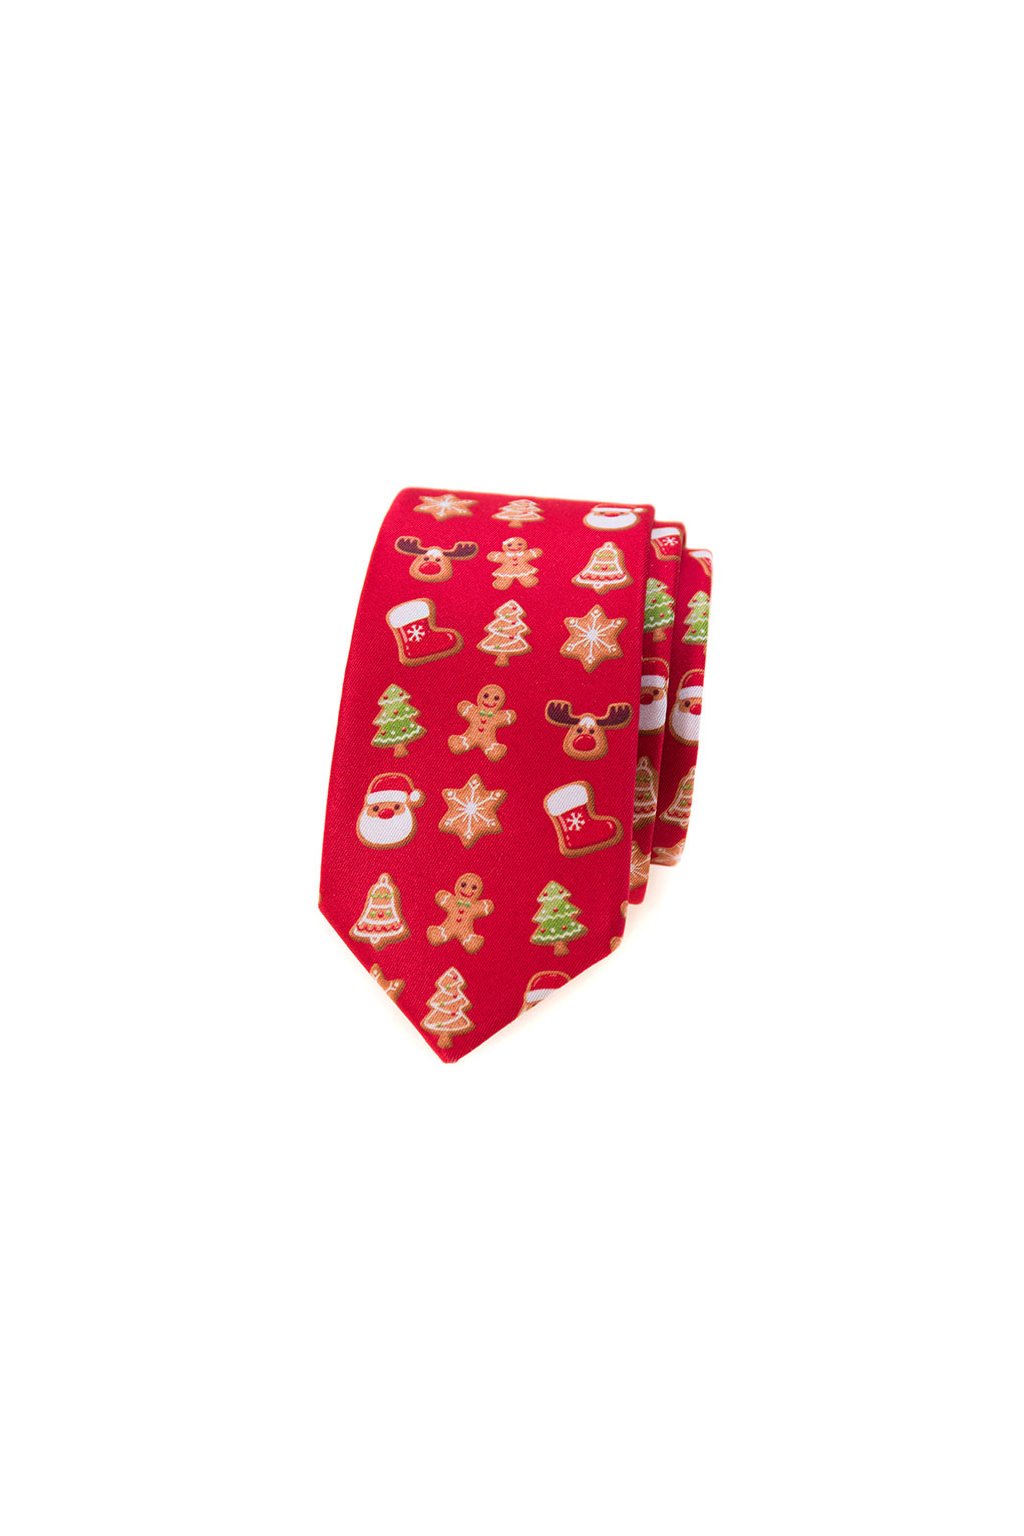 Úzká vánoční kravata Avantgard - červená / perníček